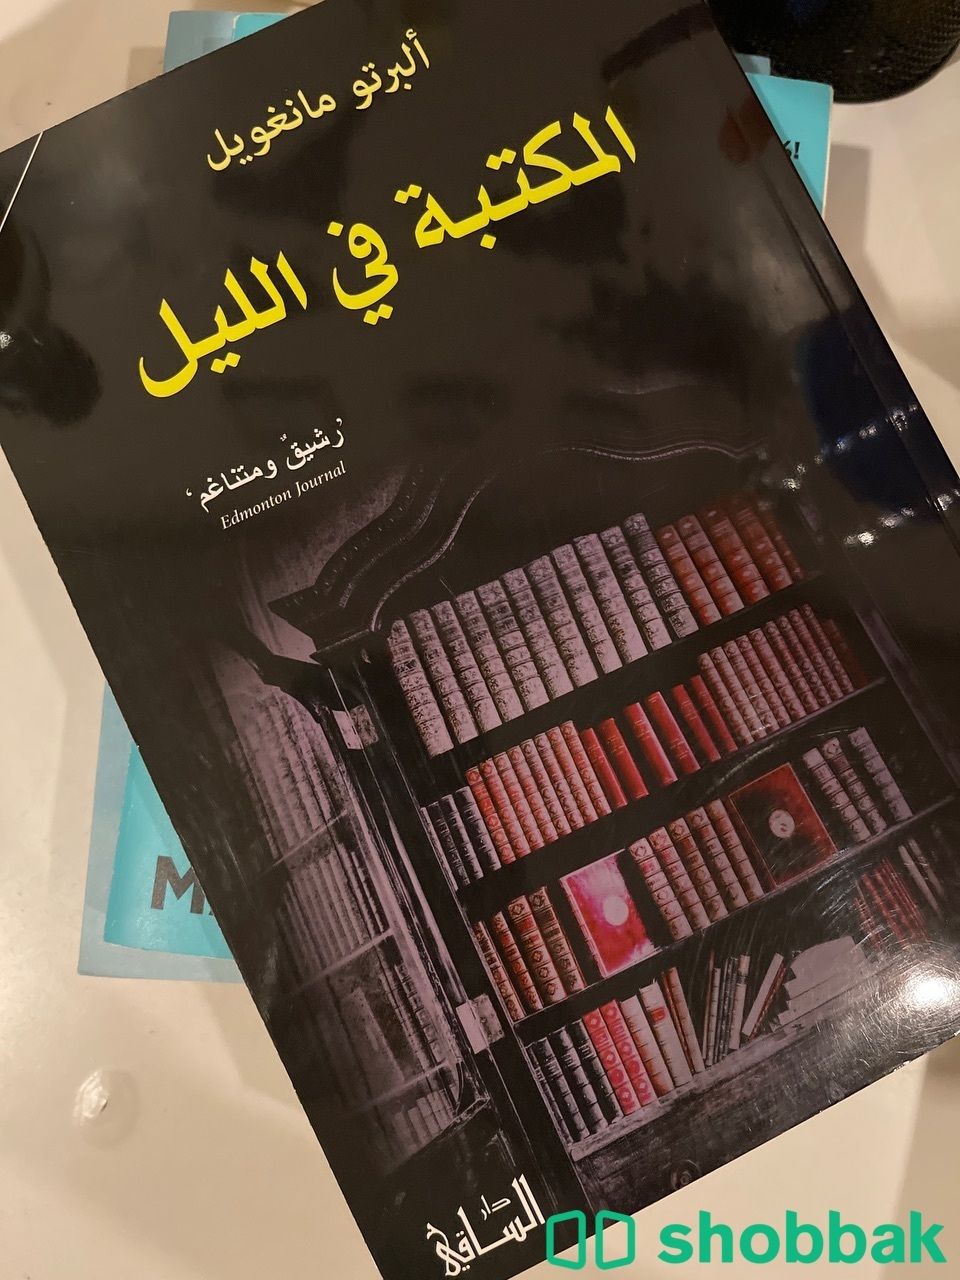 المكتبة في الليل للكاتب ألبرتو مانغويل Shobbak Saudi Arabia